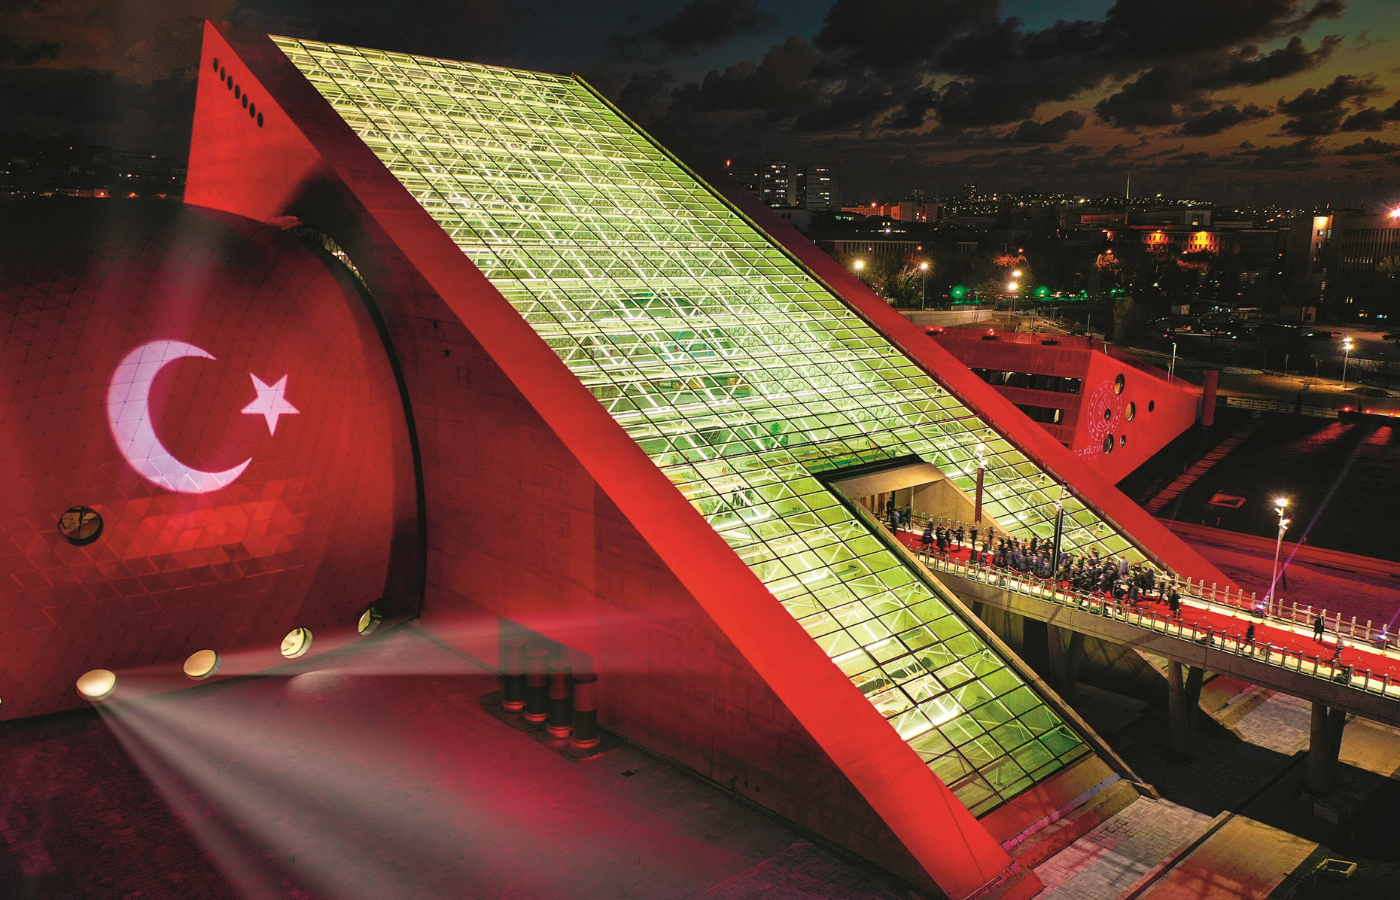 Budynek CSO ADA Ankara, siedziba jednej z najstarszych orkiestr symfonicznych na świecie (Fot. Türkiye Tourism Promotion and Development Agency)